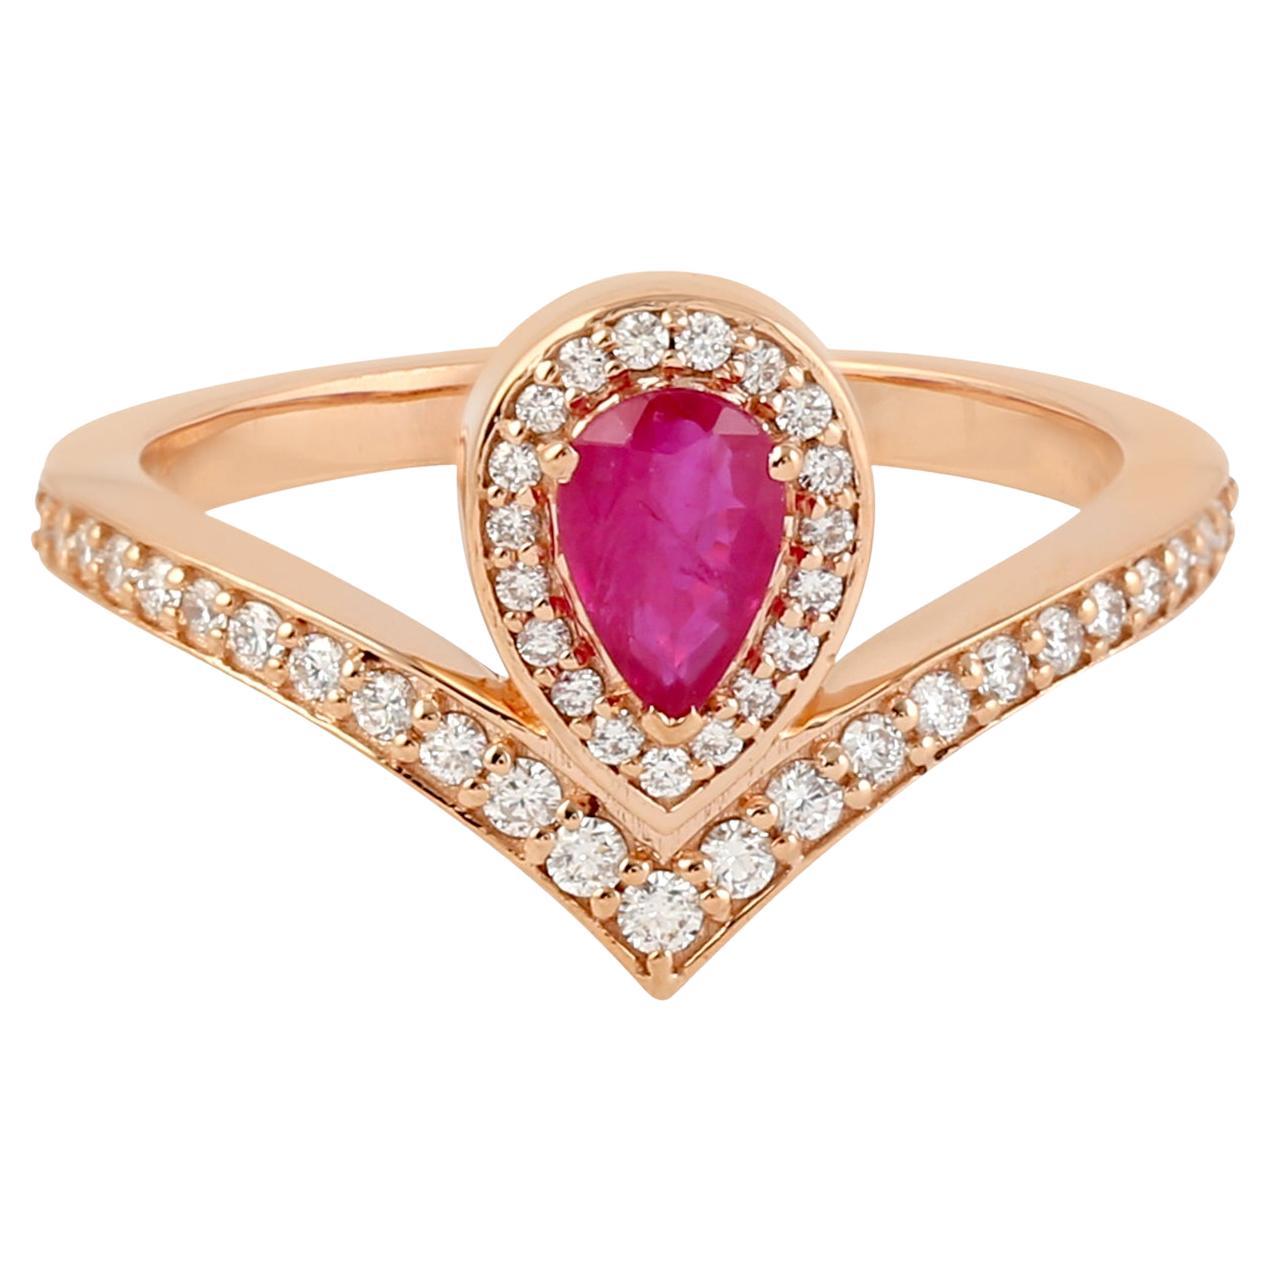 Bague en or rose 18 carats avec rubis en forme de poire accentuée de diamants